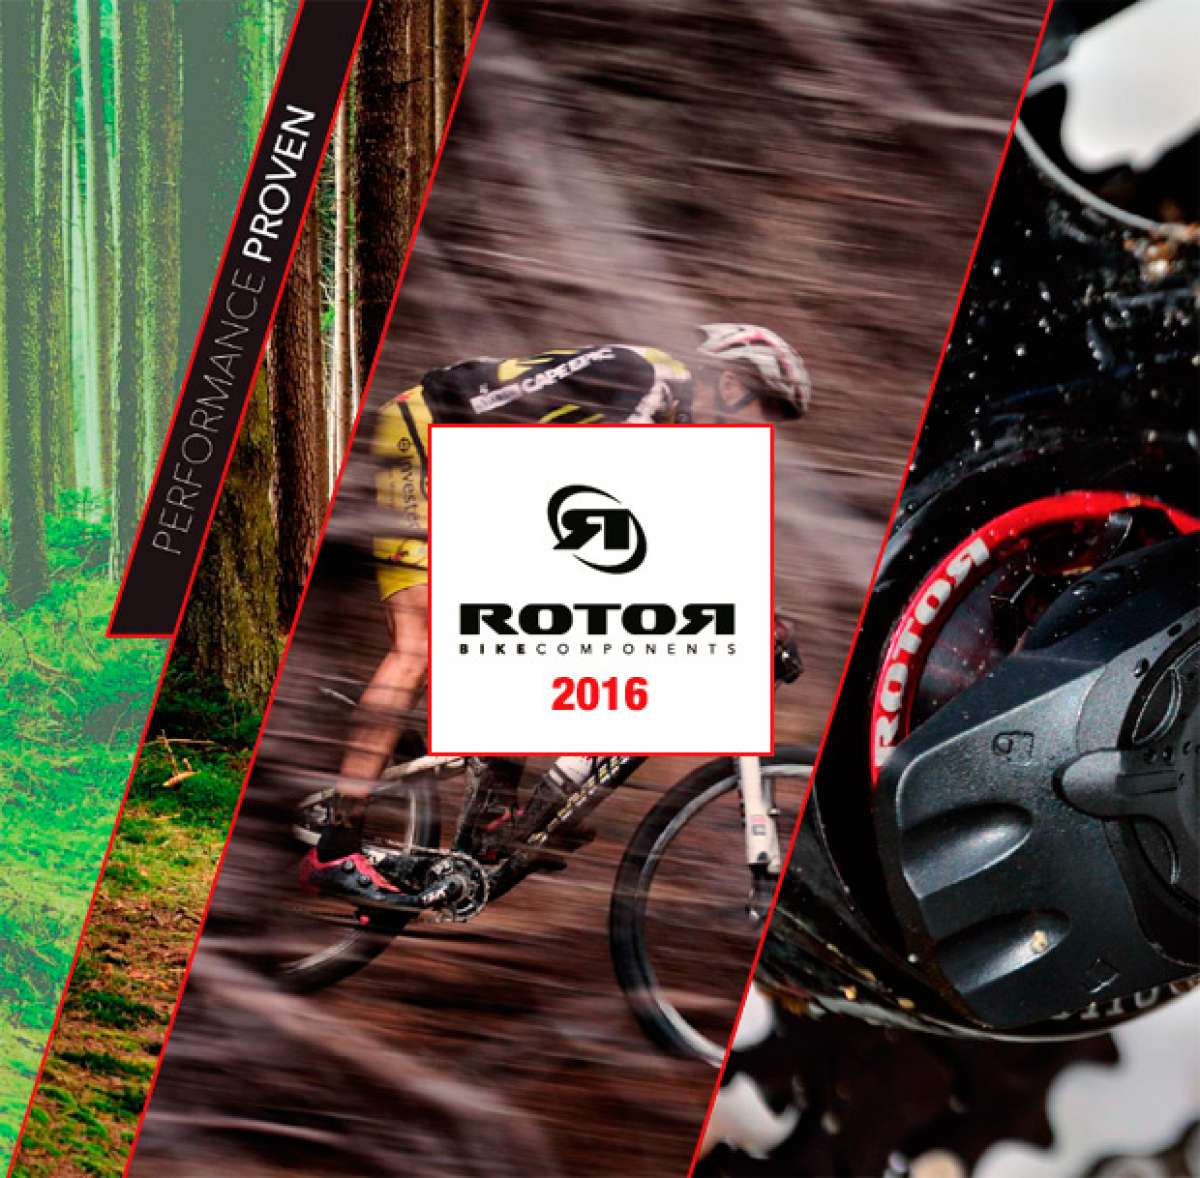 Catálogo de Rotor 2016. Toda la gama de productos Rotor para la temporada 2016